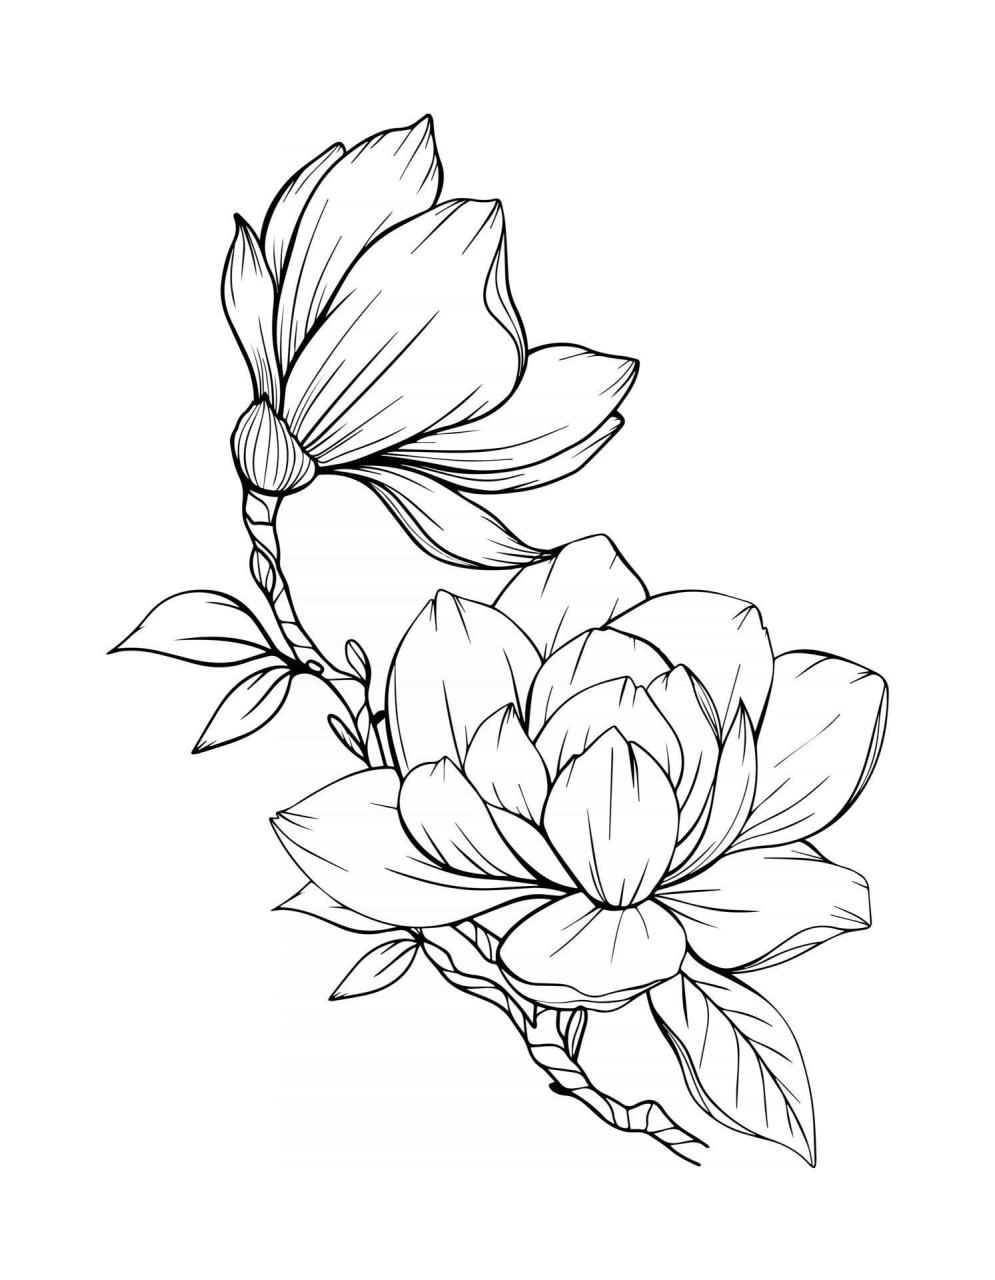 Magnolia Flower Outline Magnolia LIne Art Line Drawing Flower Line